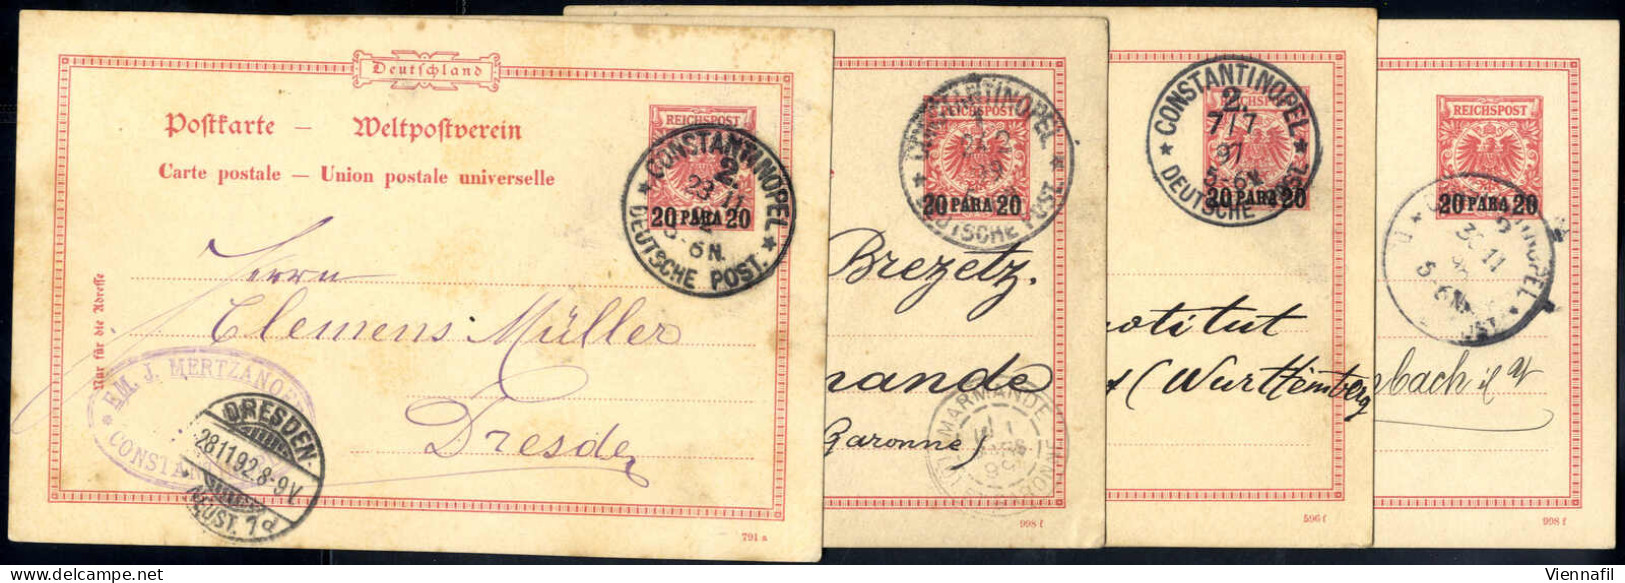 Cover 1892/99, 3 Karten Mit Aufdruck "20 Para 20", Alle Gebraucht In Constantinopel, Mi. P 3/01,3/02(2) - Deutsche Post In Der Türkei